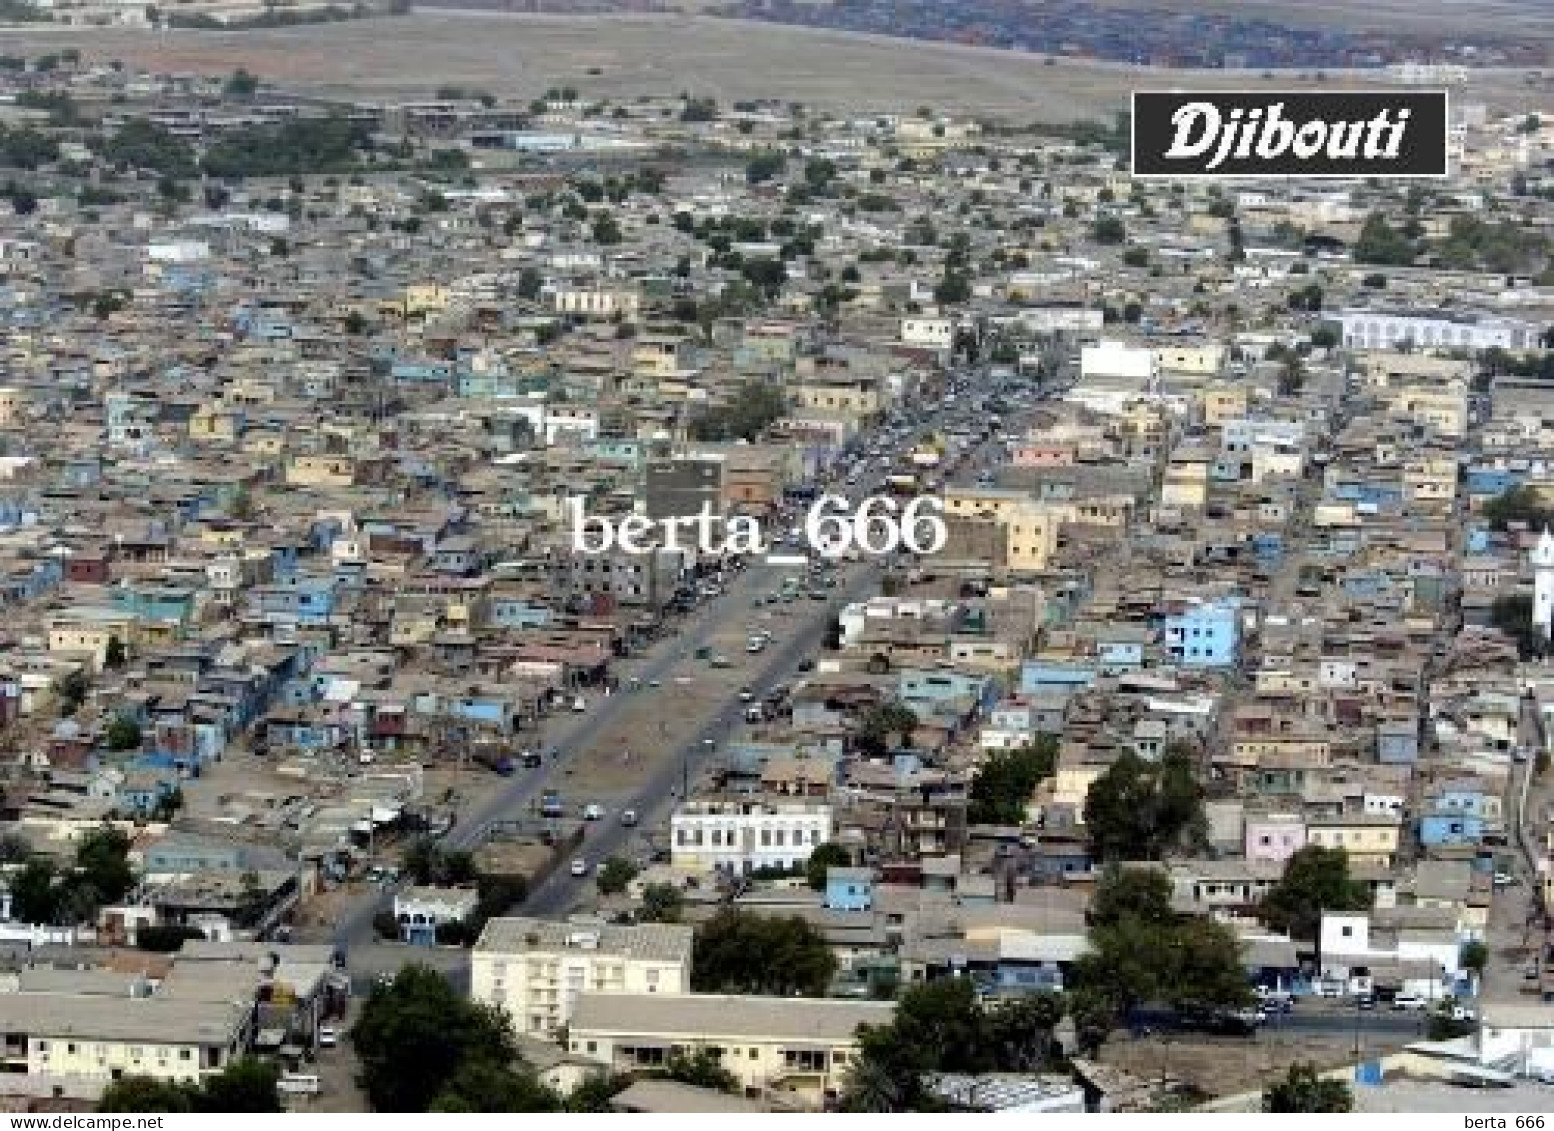 Djibouti City Aerial View New Postcard - Djibouti